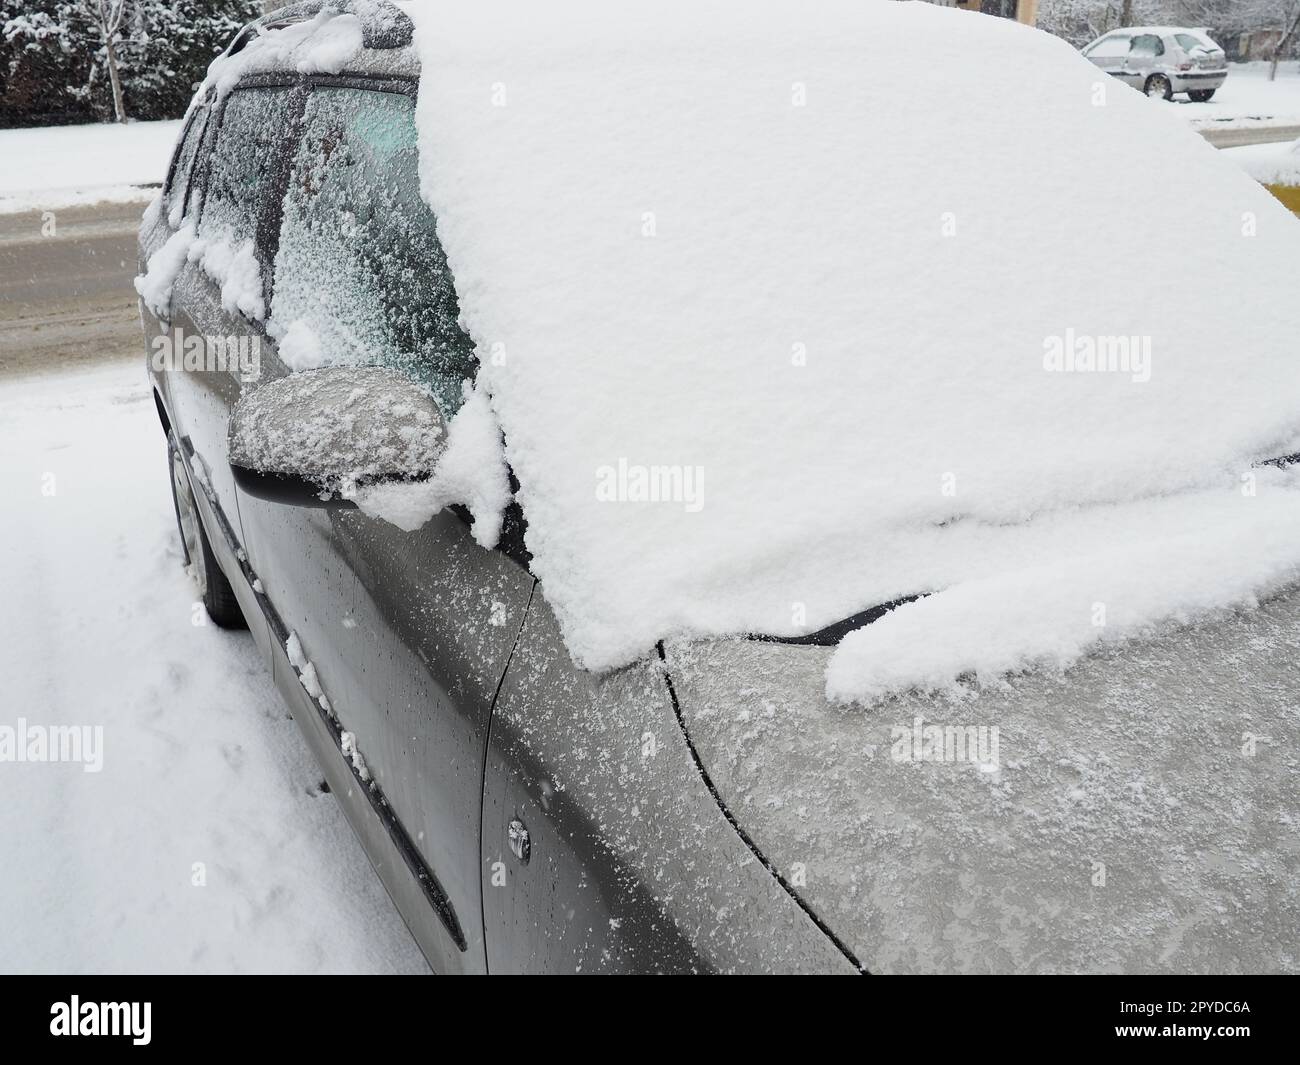 Schnee und Eis auf der Windschutzscheibe, den Rückspiegeln des Fahrzeugs. Winterliche Fahrbedingungen. Schneeräumen. Strassenverkehr im Winter. Metallic-Auto. Schneewehen und Matsch. Stockfoto